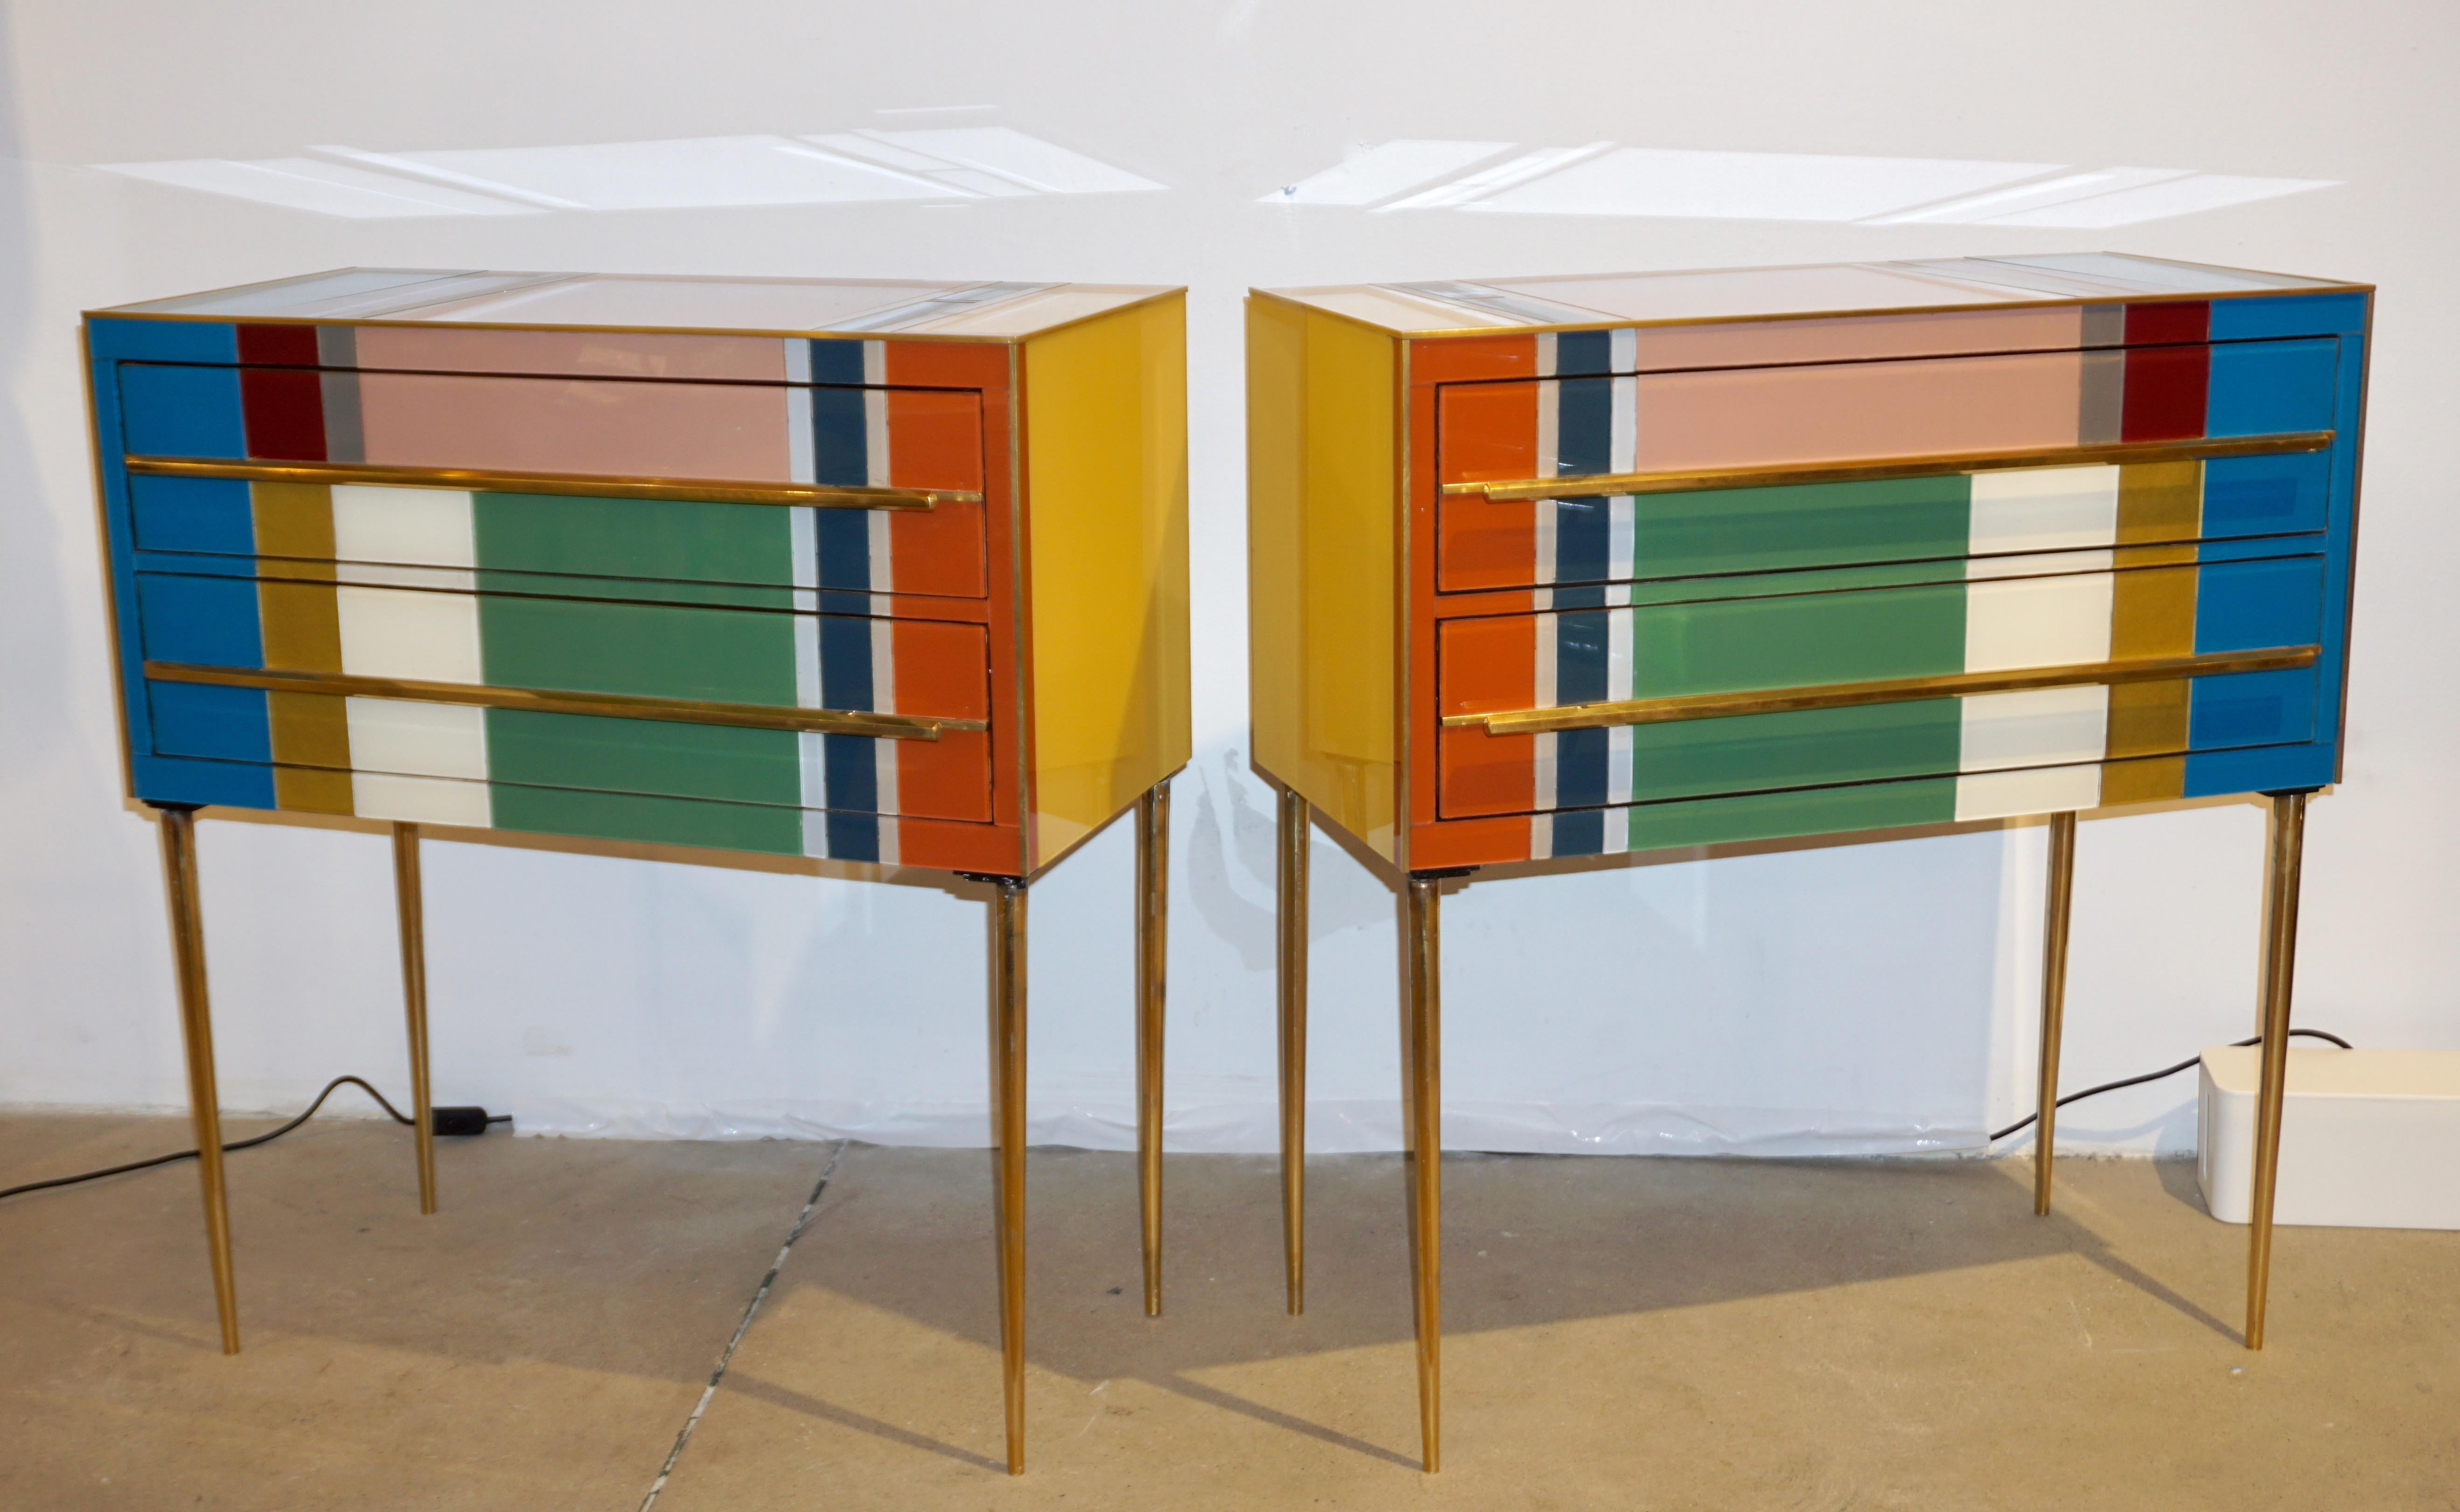 Paire de tables de chevet / tables de nuit contemporaines graphiques personnalisables, géométriques recyclées Pop design, entièrement réalisées à la main à partir de bois de récupération avec un décor abstrait inspiré de Piet Mondrian, les